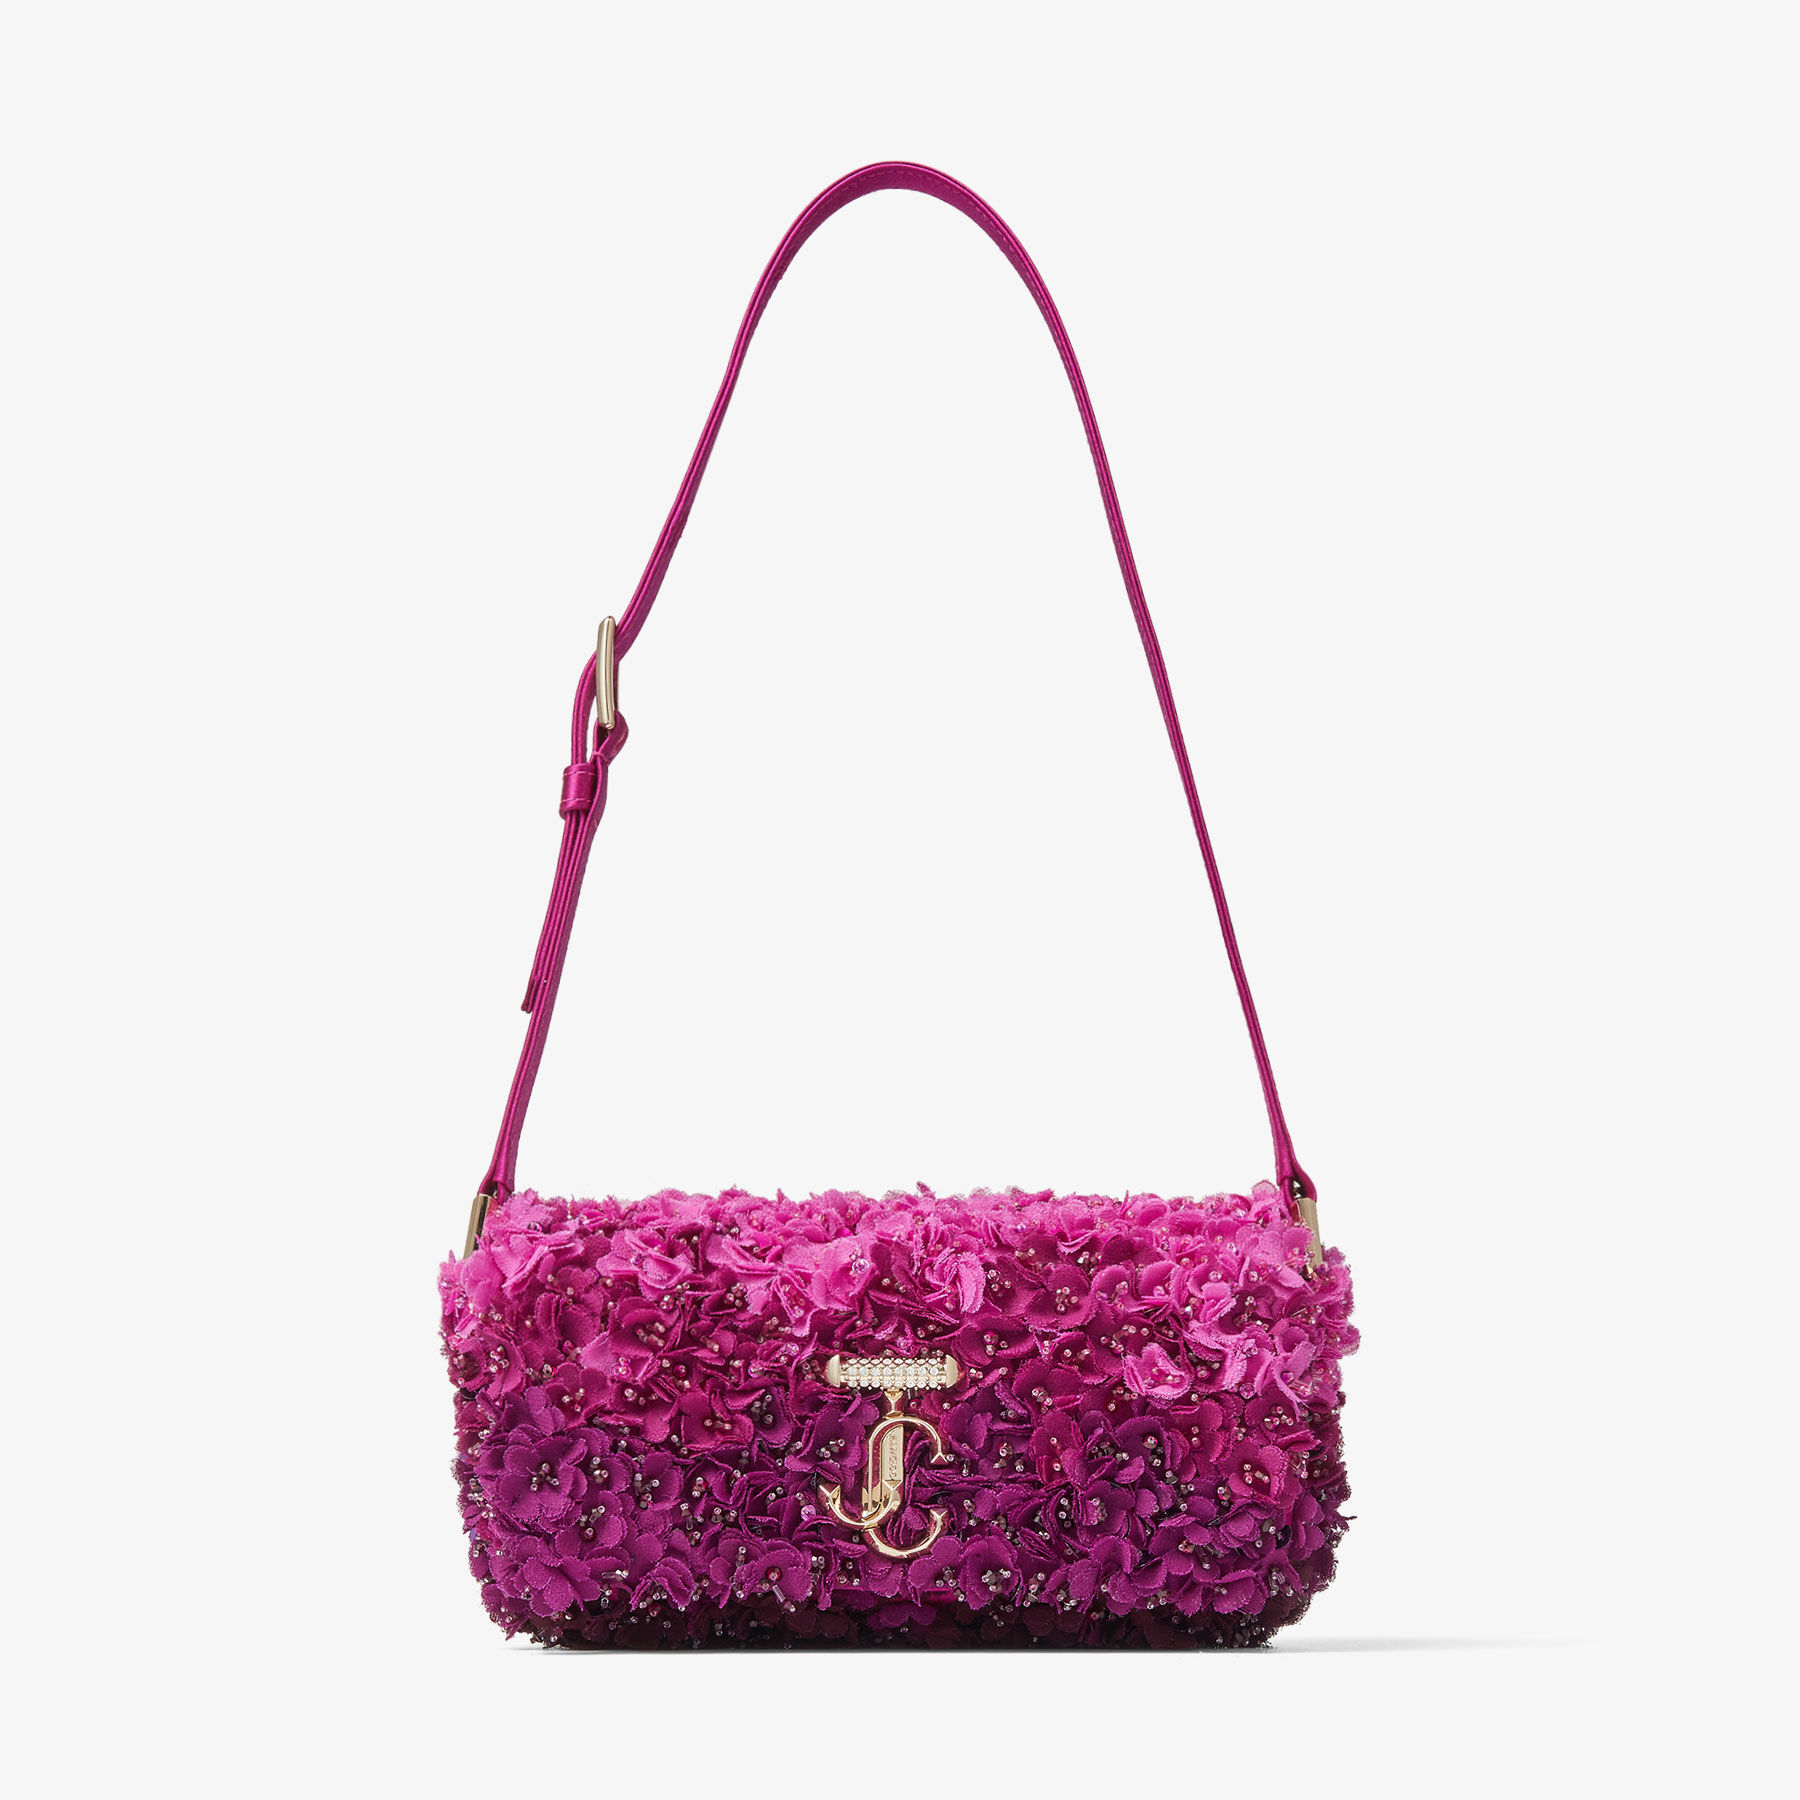 Sequin Crochet Handbag Lite Pink - Etsy